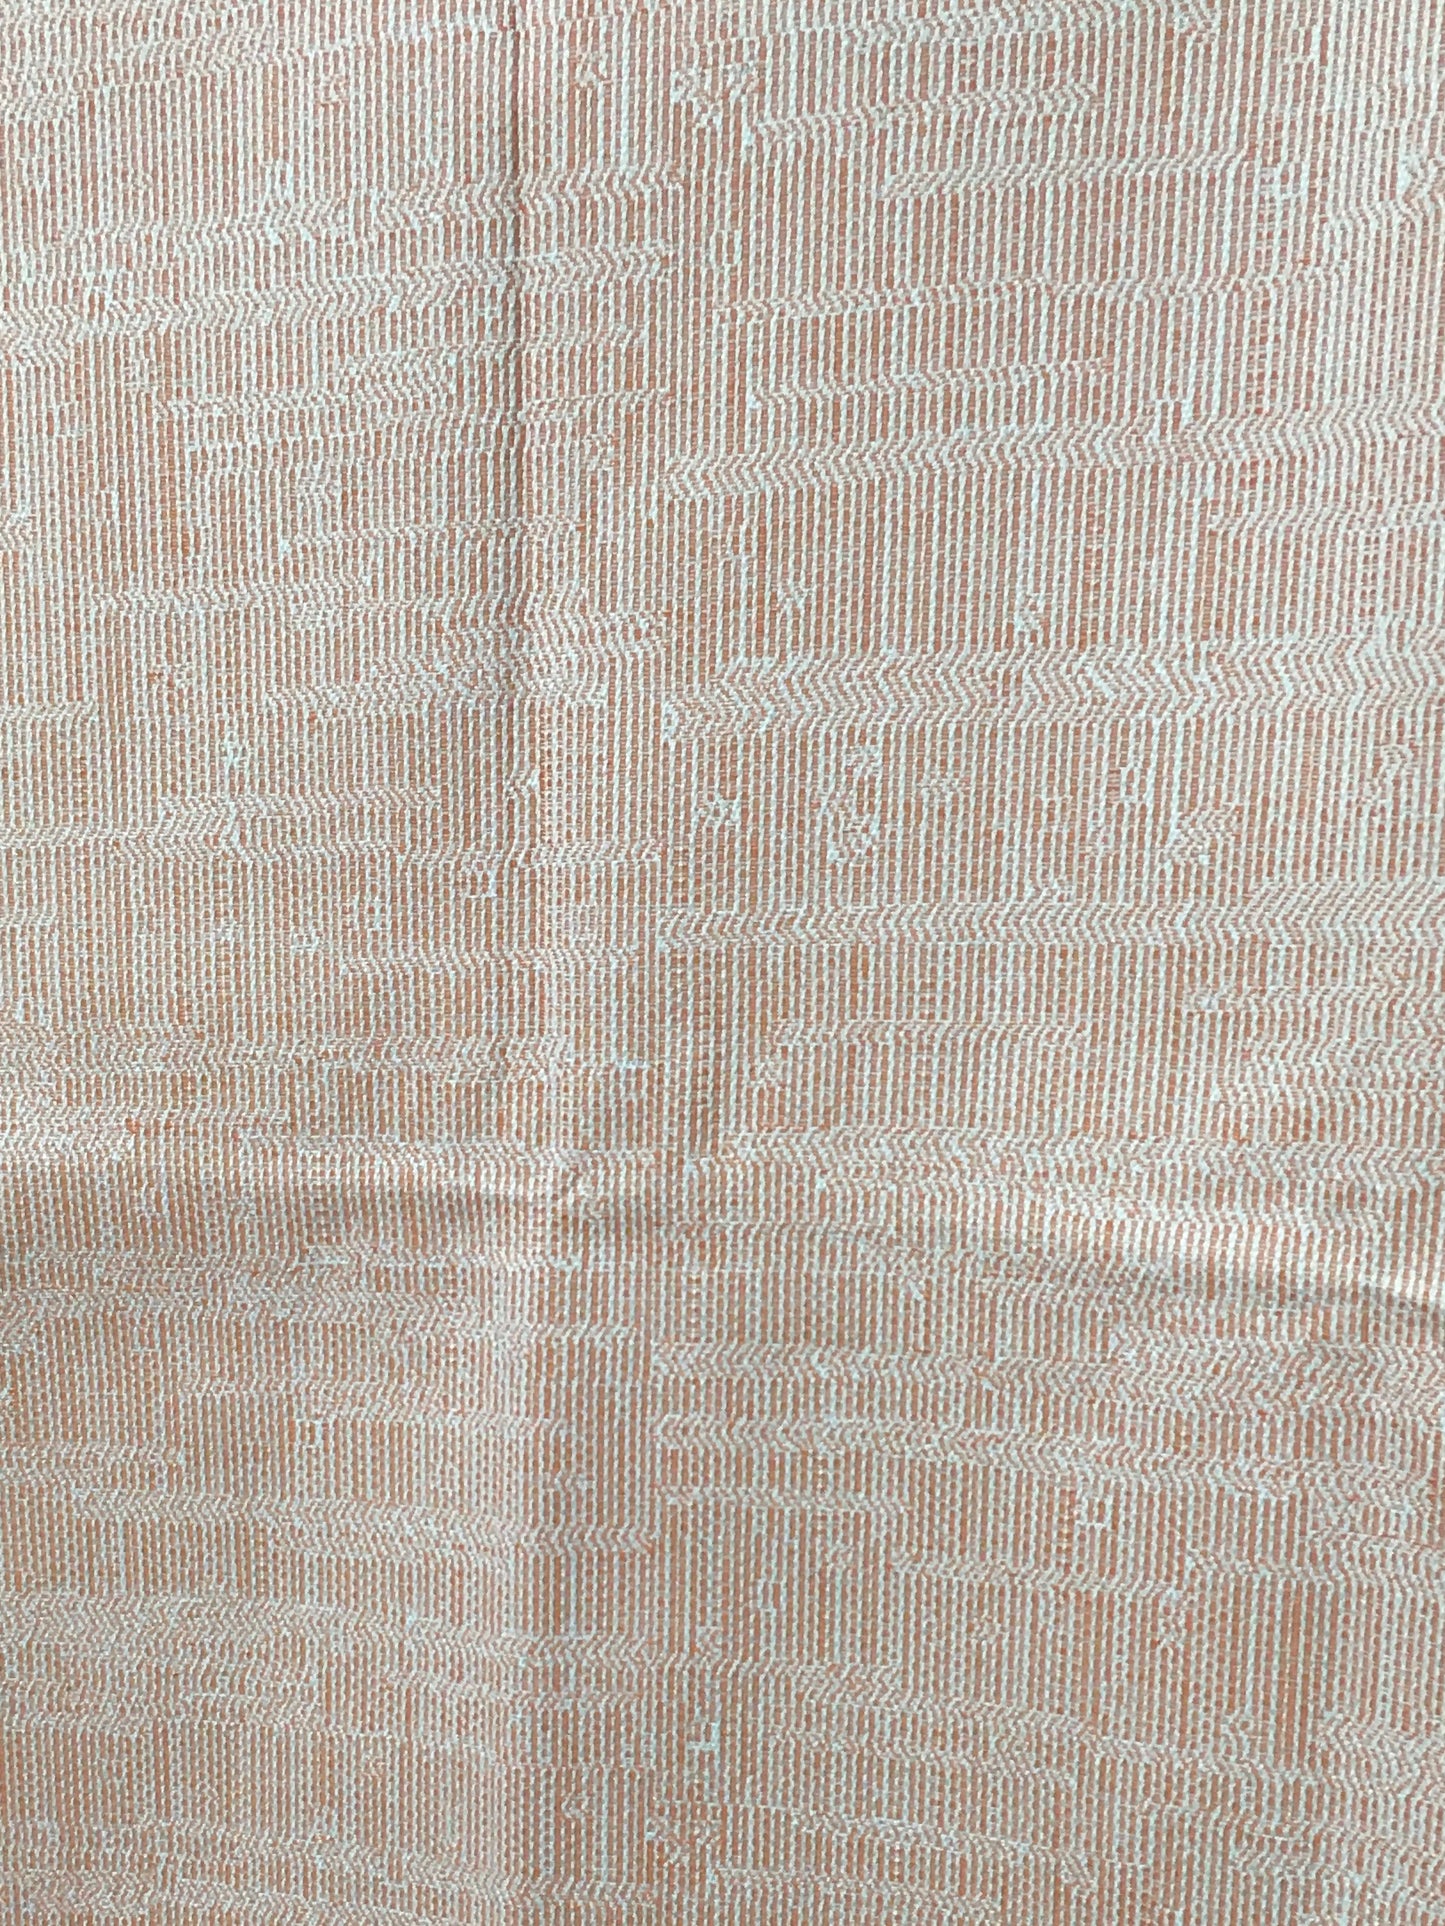 Fabric - Pillow - H2341